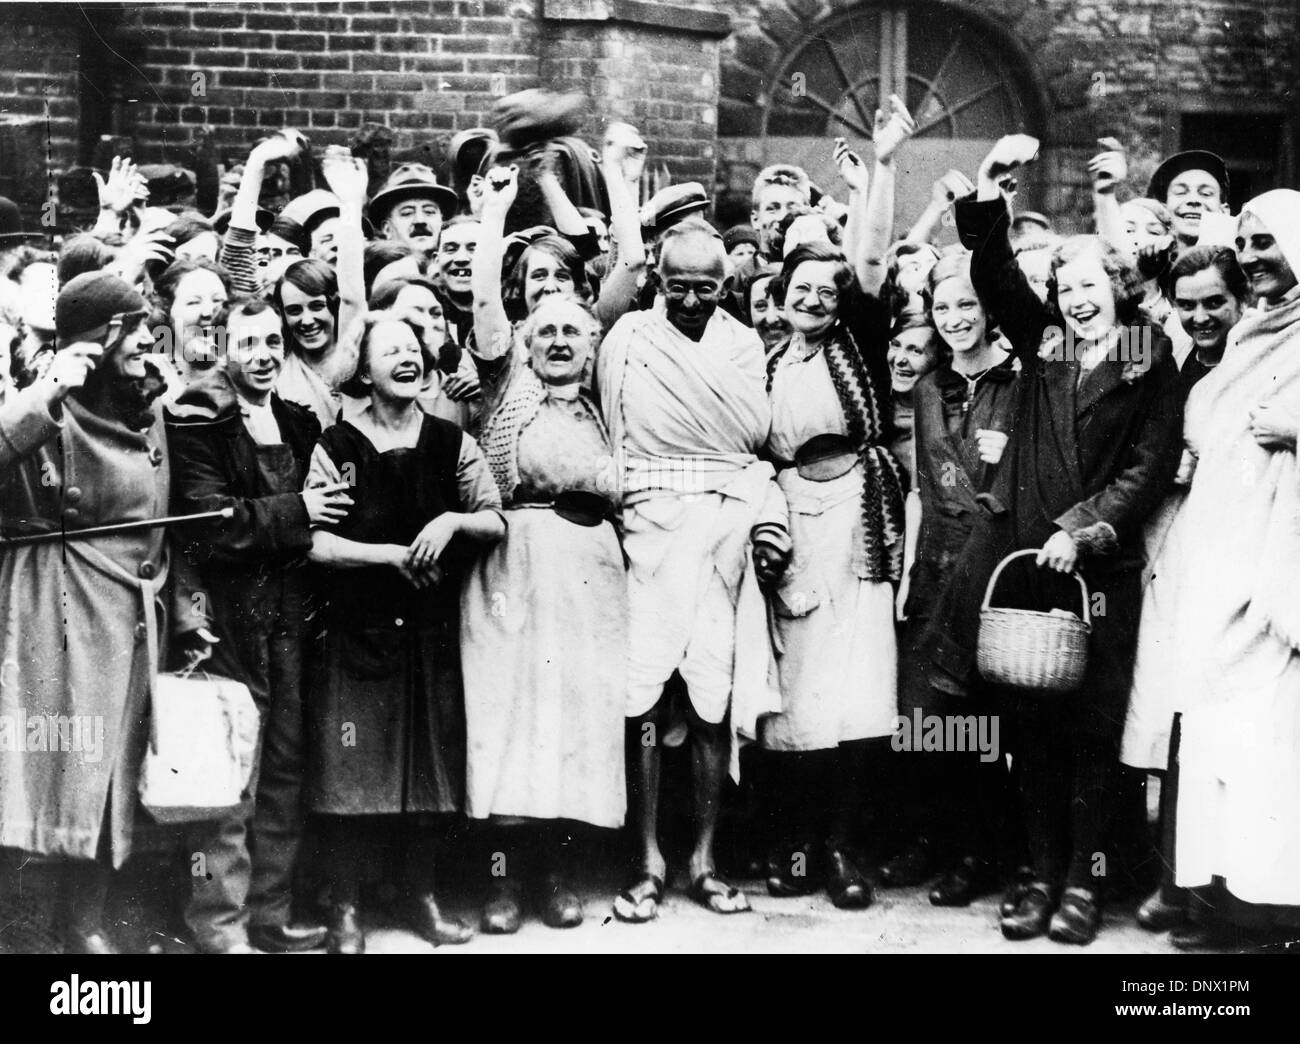 Le 5 novembre 1931 - Londres, Angleterre, Royaume-Uni - chef religieux le mahatma Gandhi entouré par une foule de citoyens lors d'une visite à Londres. (Crédit Image : © Keystone Photos USA/ZUMAPRESS.com) Banque D'Images